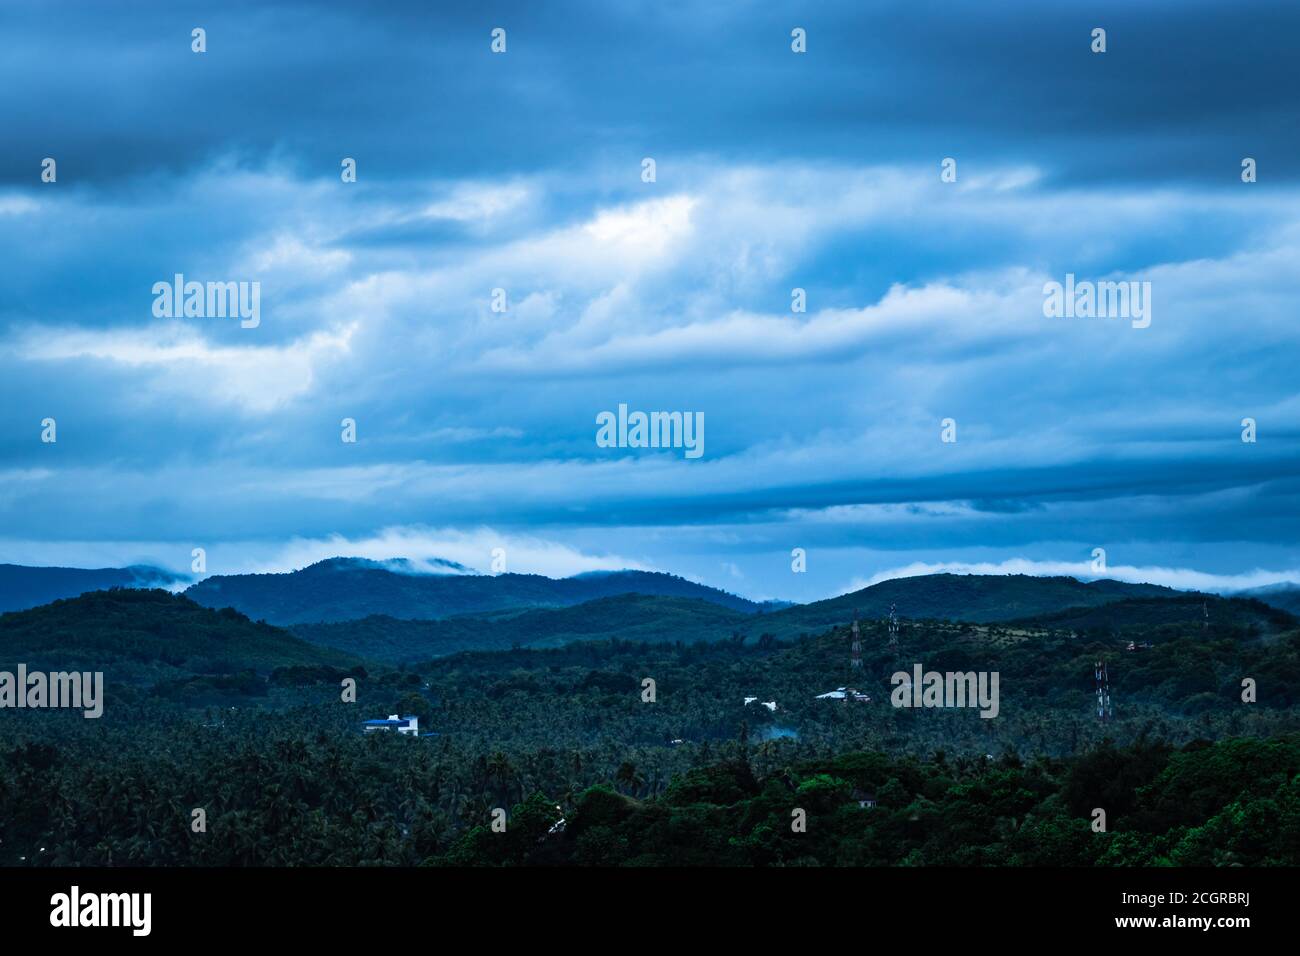 la vista in cima alla montagna della catena montuosa con il cielo nuvoloso in serata viene scattata a gokarna karnataka india. Foto Stock